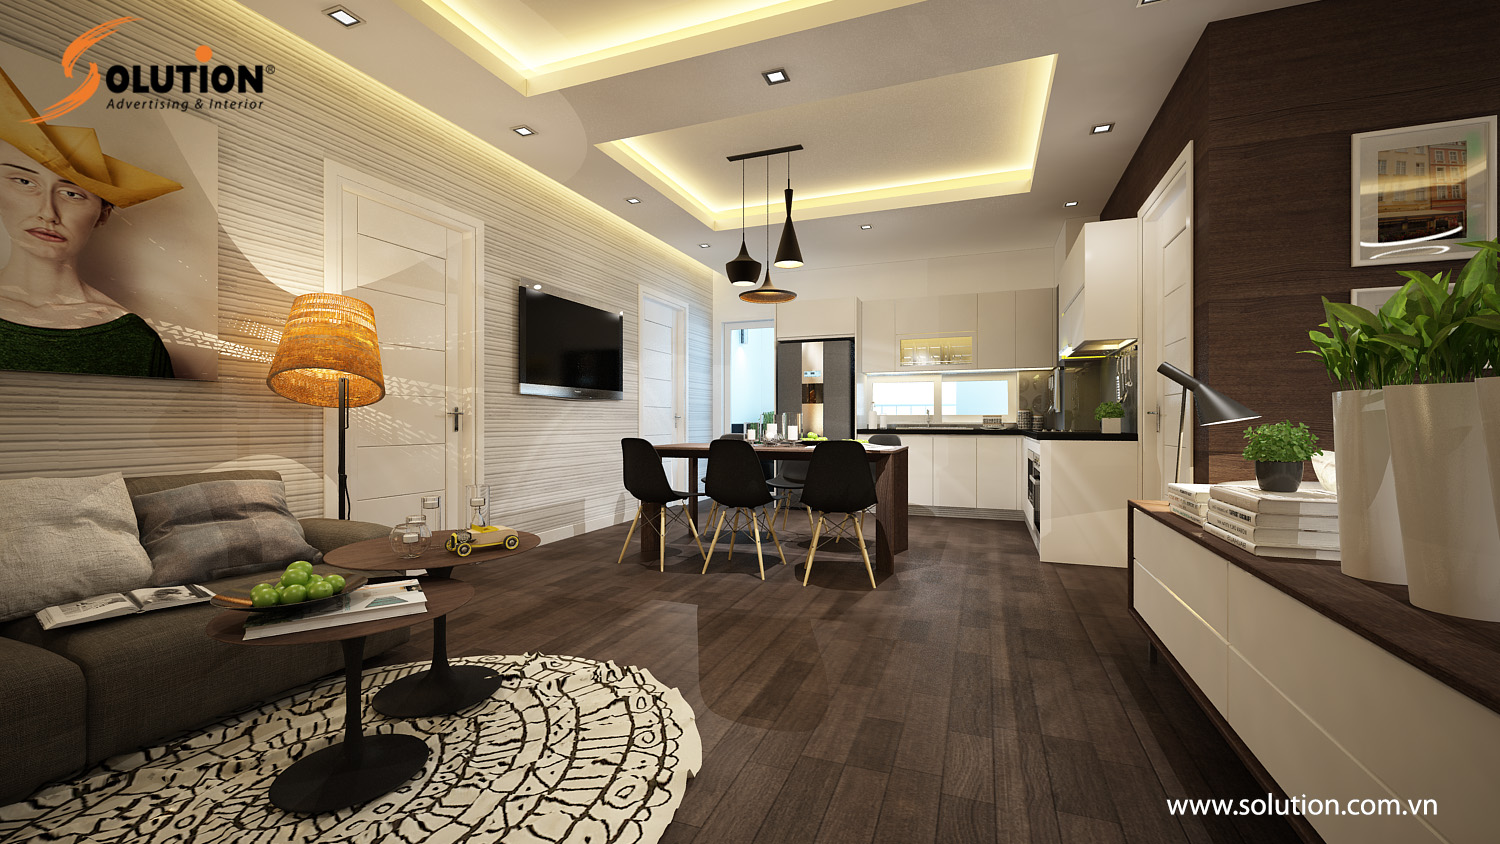 Thiết kế nội thất chung cư tại Hà Nội đẹp giá rẻ năm 2021